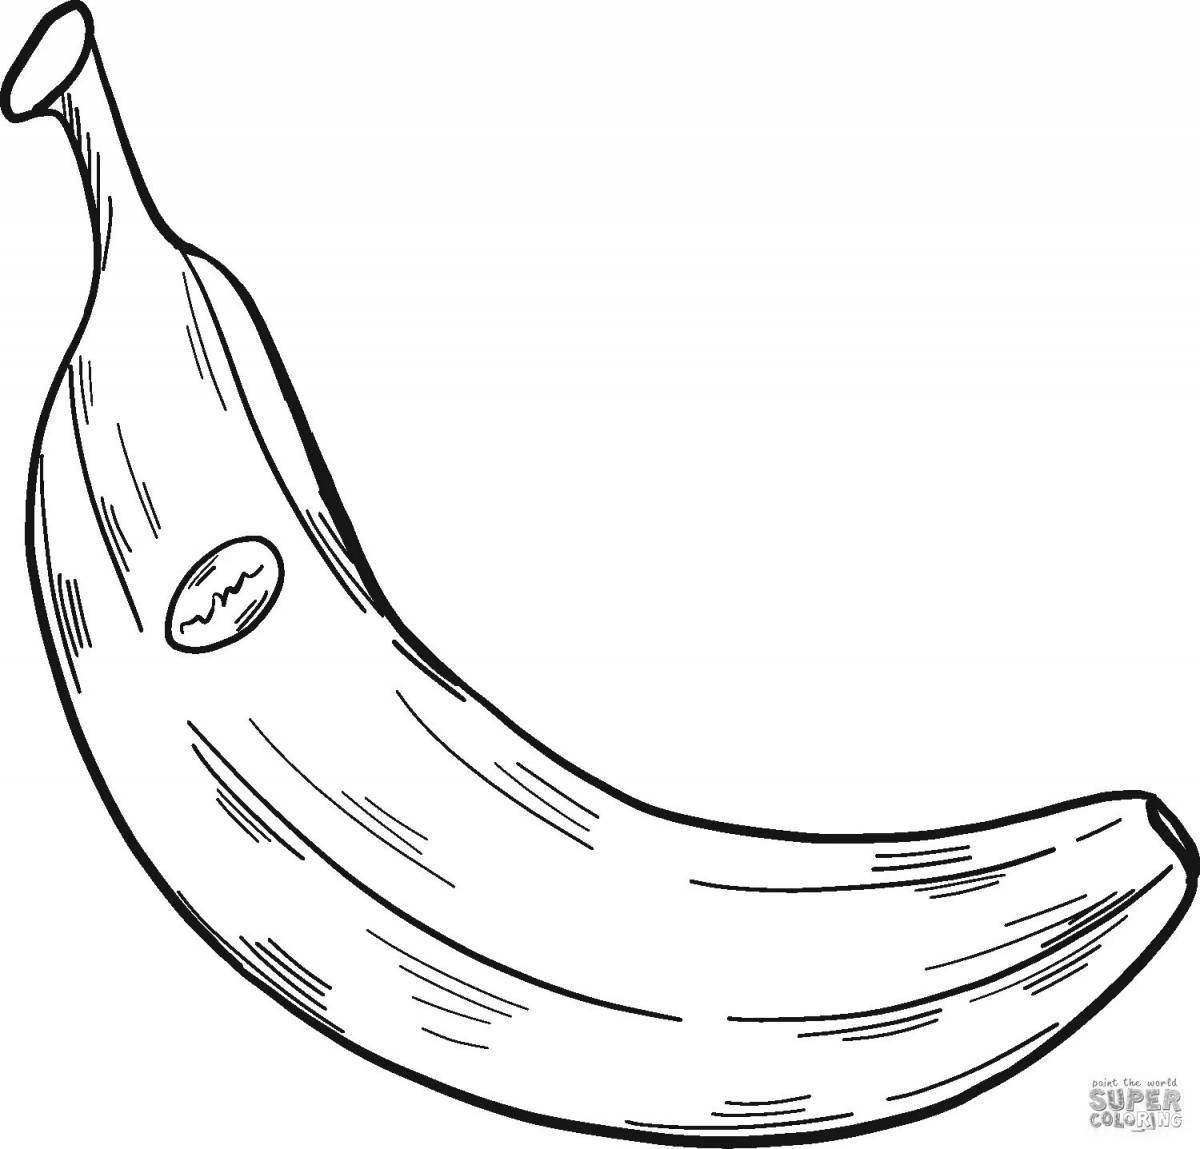 Развлекательная раскраска бананов для детей 3-4 лет